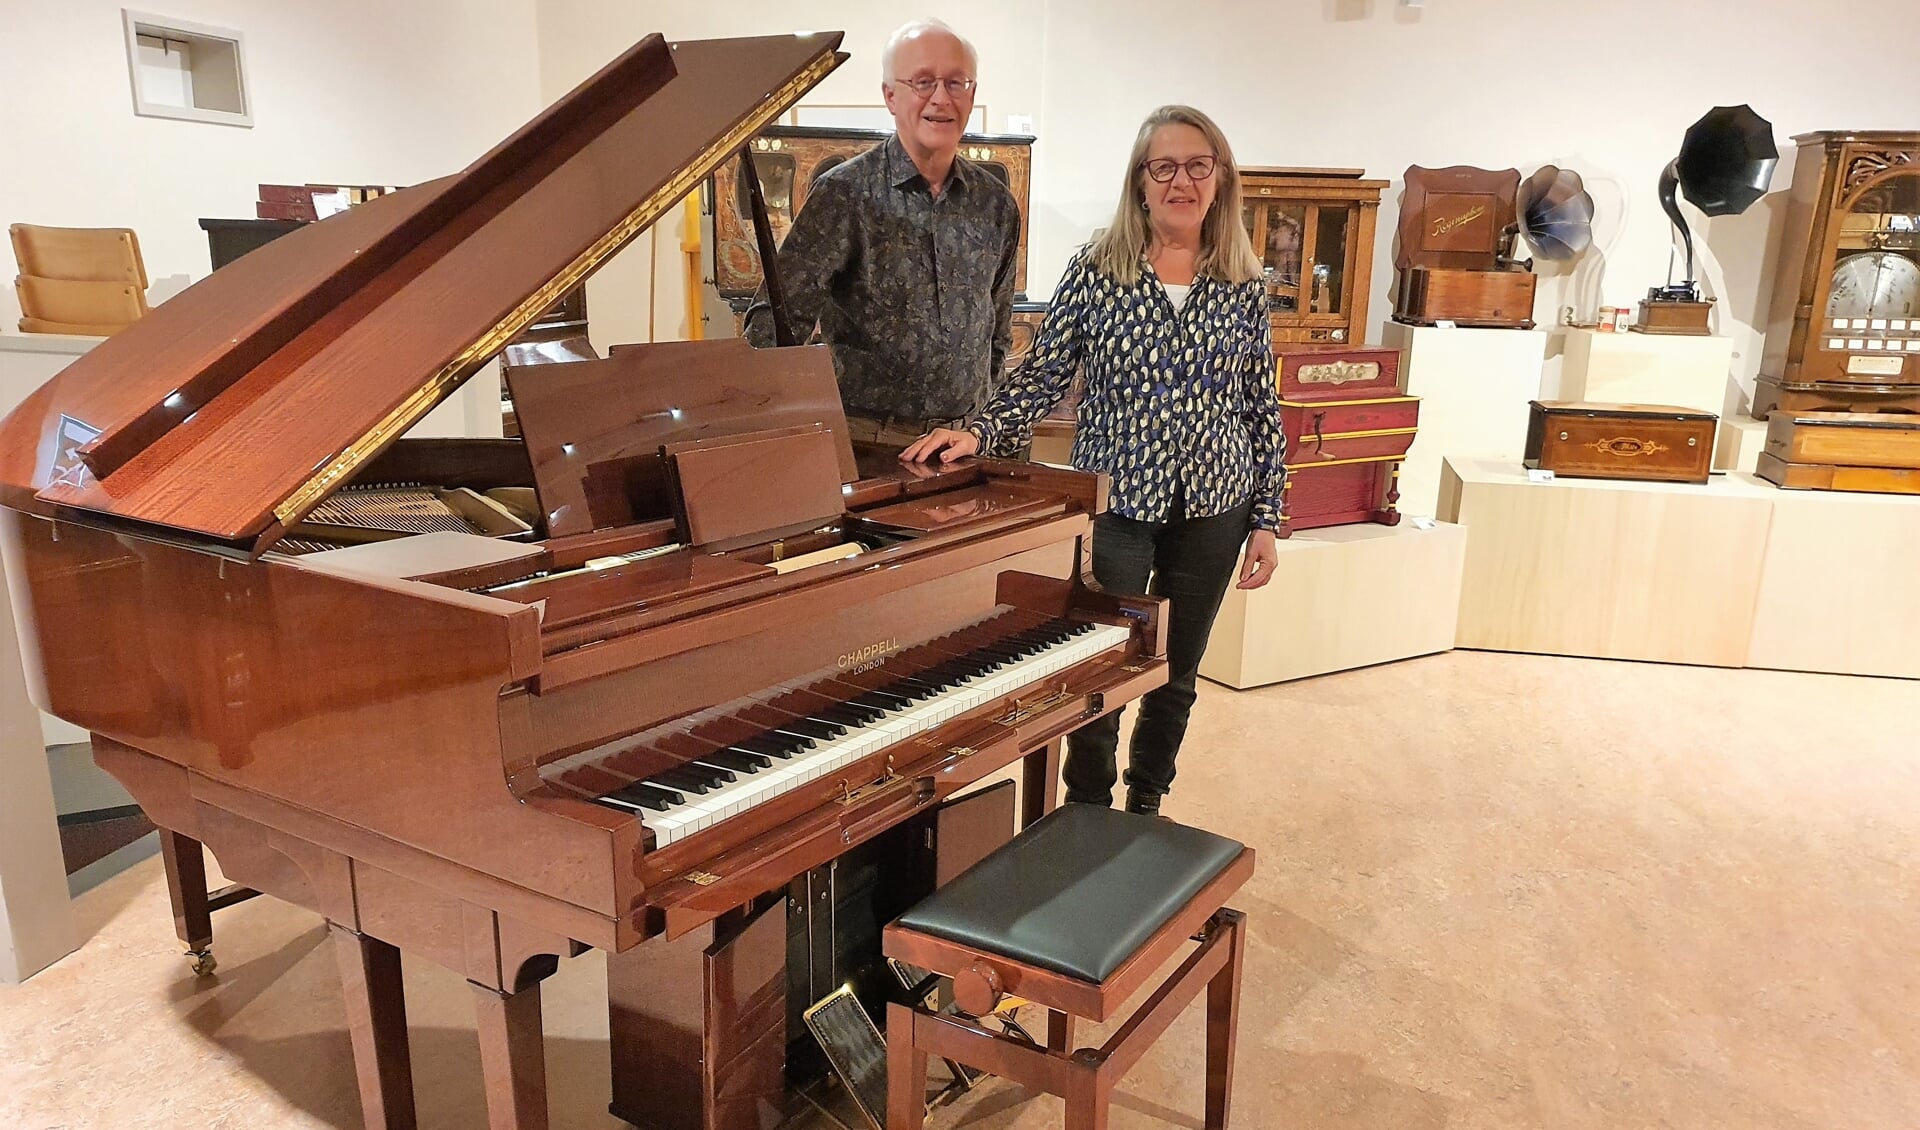 Museumdirecteur Johan van de Pol en de voorzitter van 'de Vrienden' Meta Moerman poseren bij de bijzondere Chapell pianola.